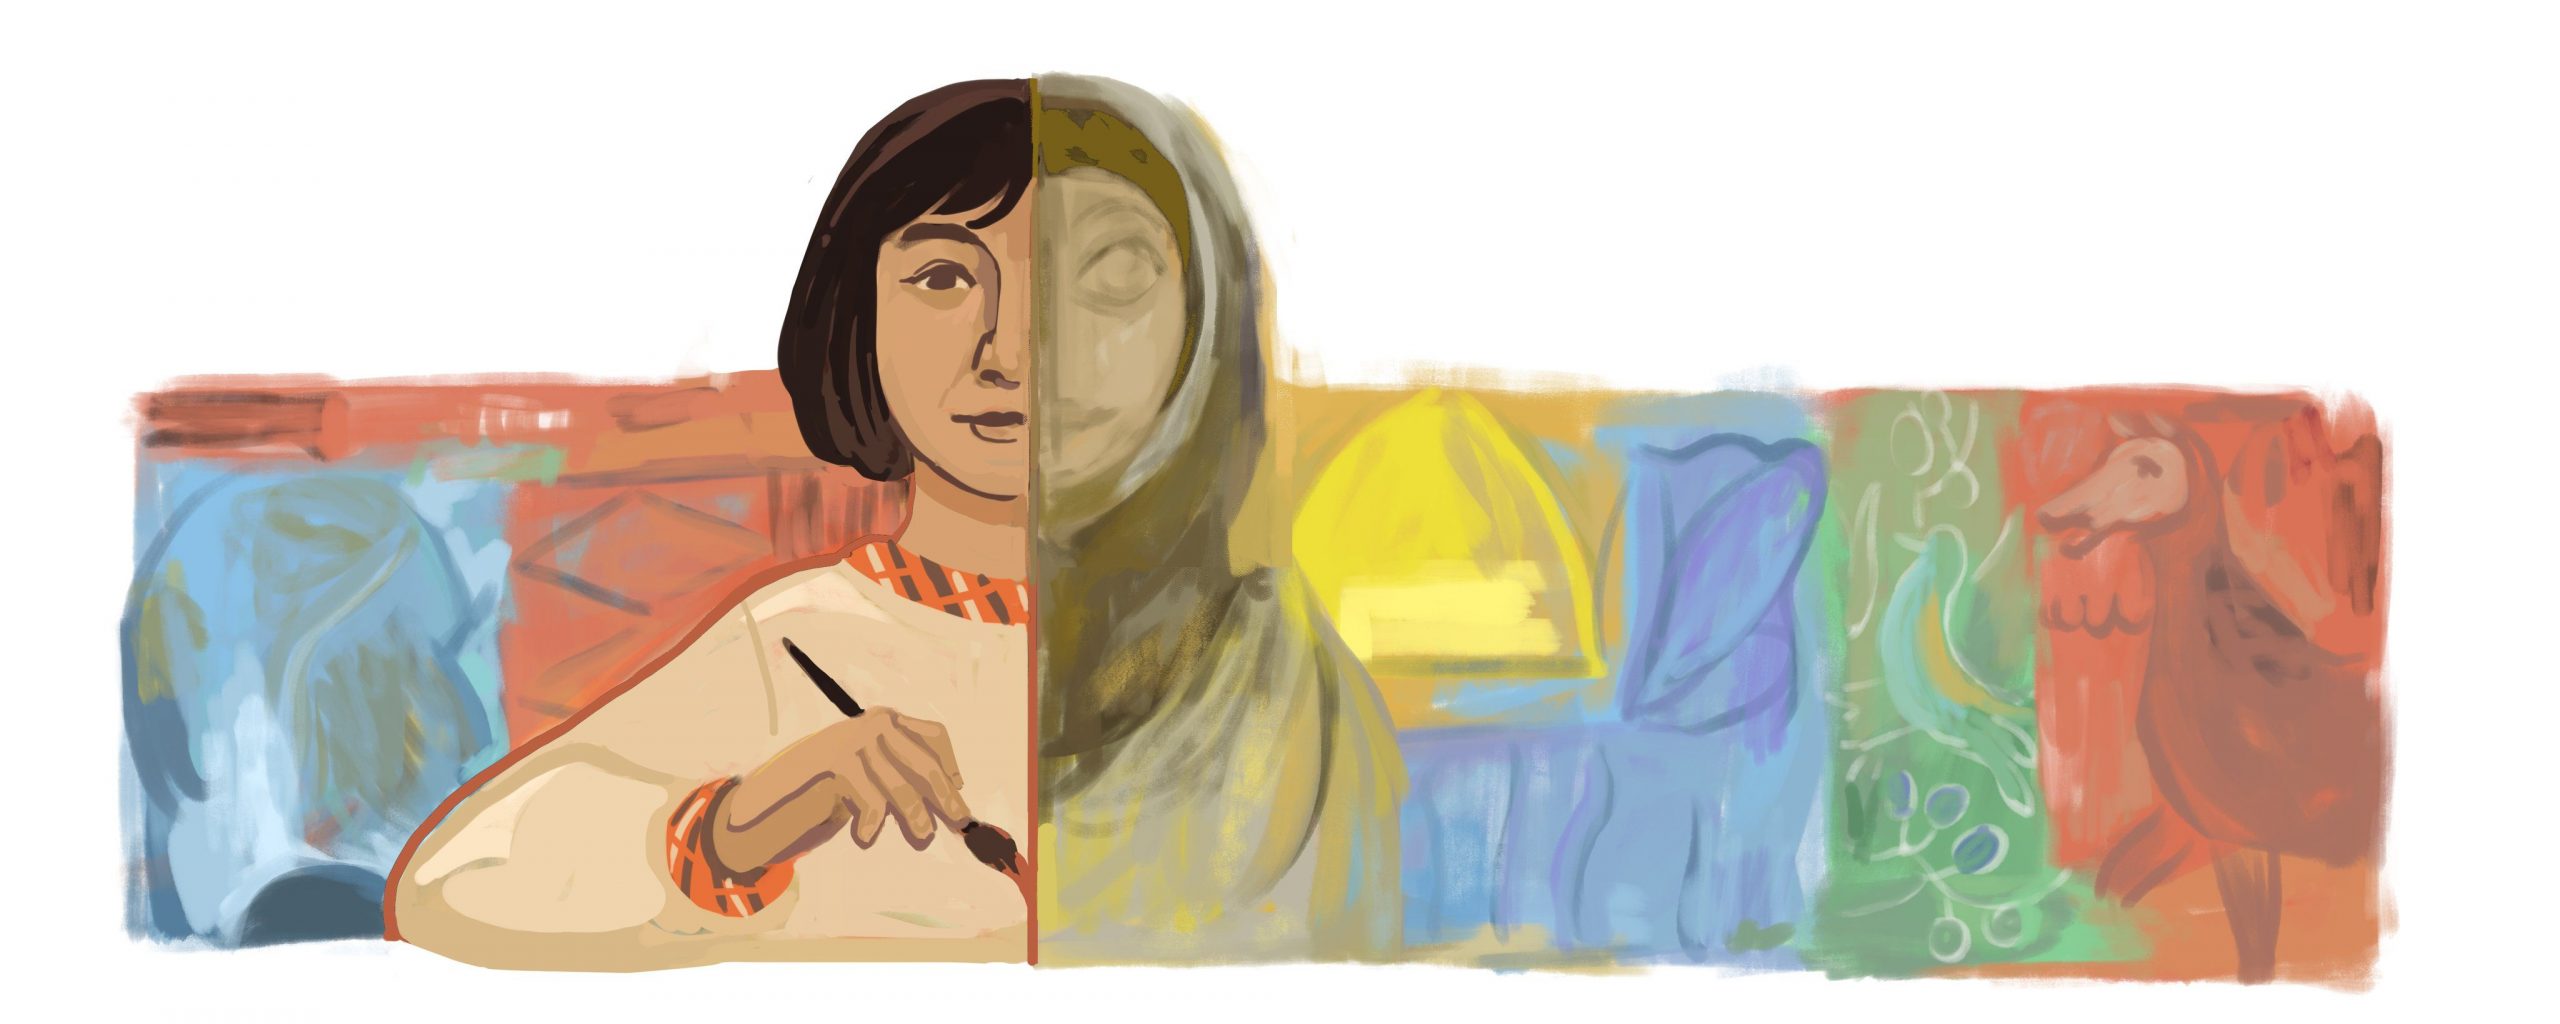 Google doodle celebrates Iraqi artist Naziha Salim